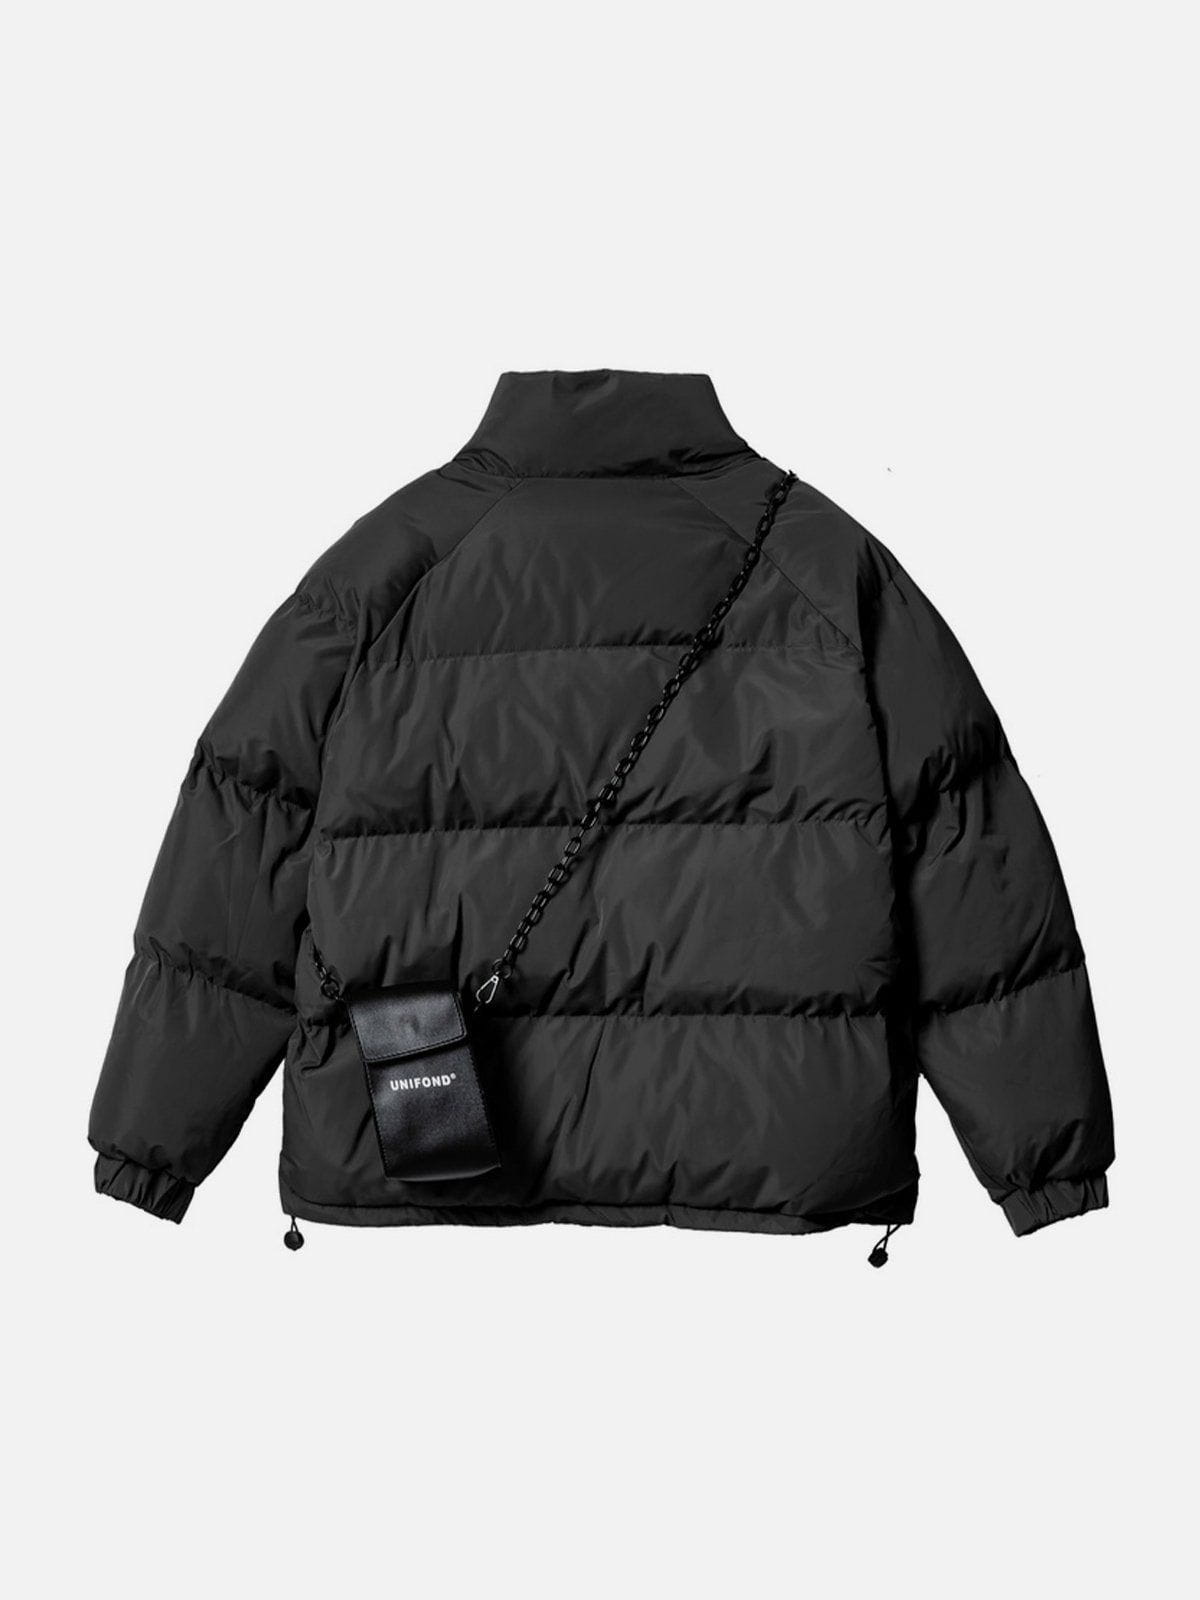 Sneakerland™ - Solid Detachable Satchel Winter Coat